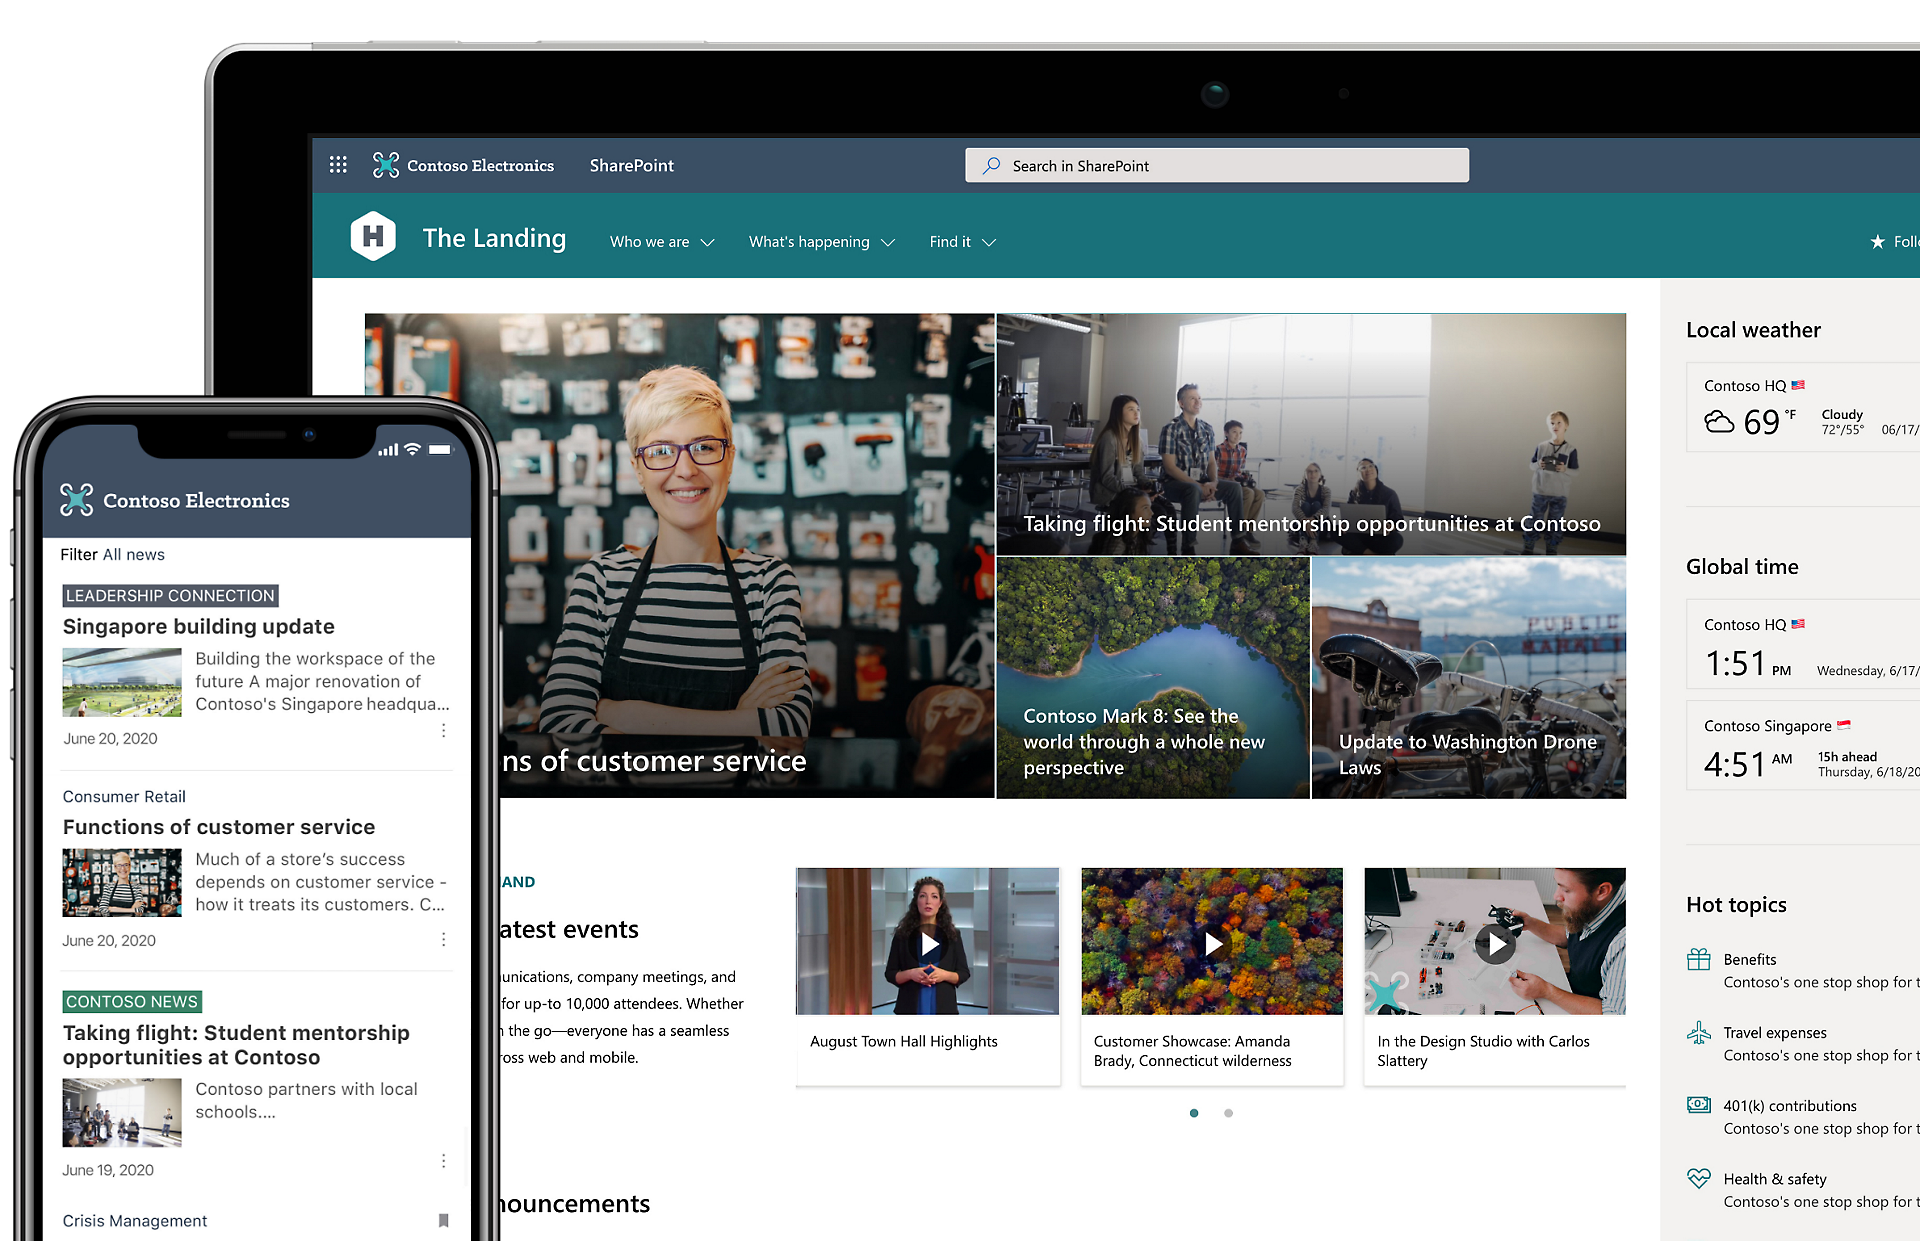 顯示 SharePoint 主畫面的平板電腦裝置畫面，以及顯示最新消息主畫面的行動裝置